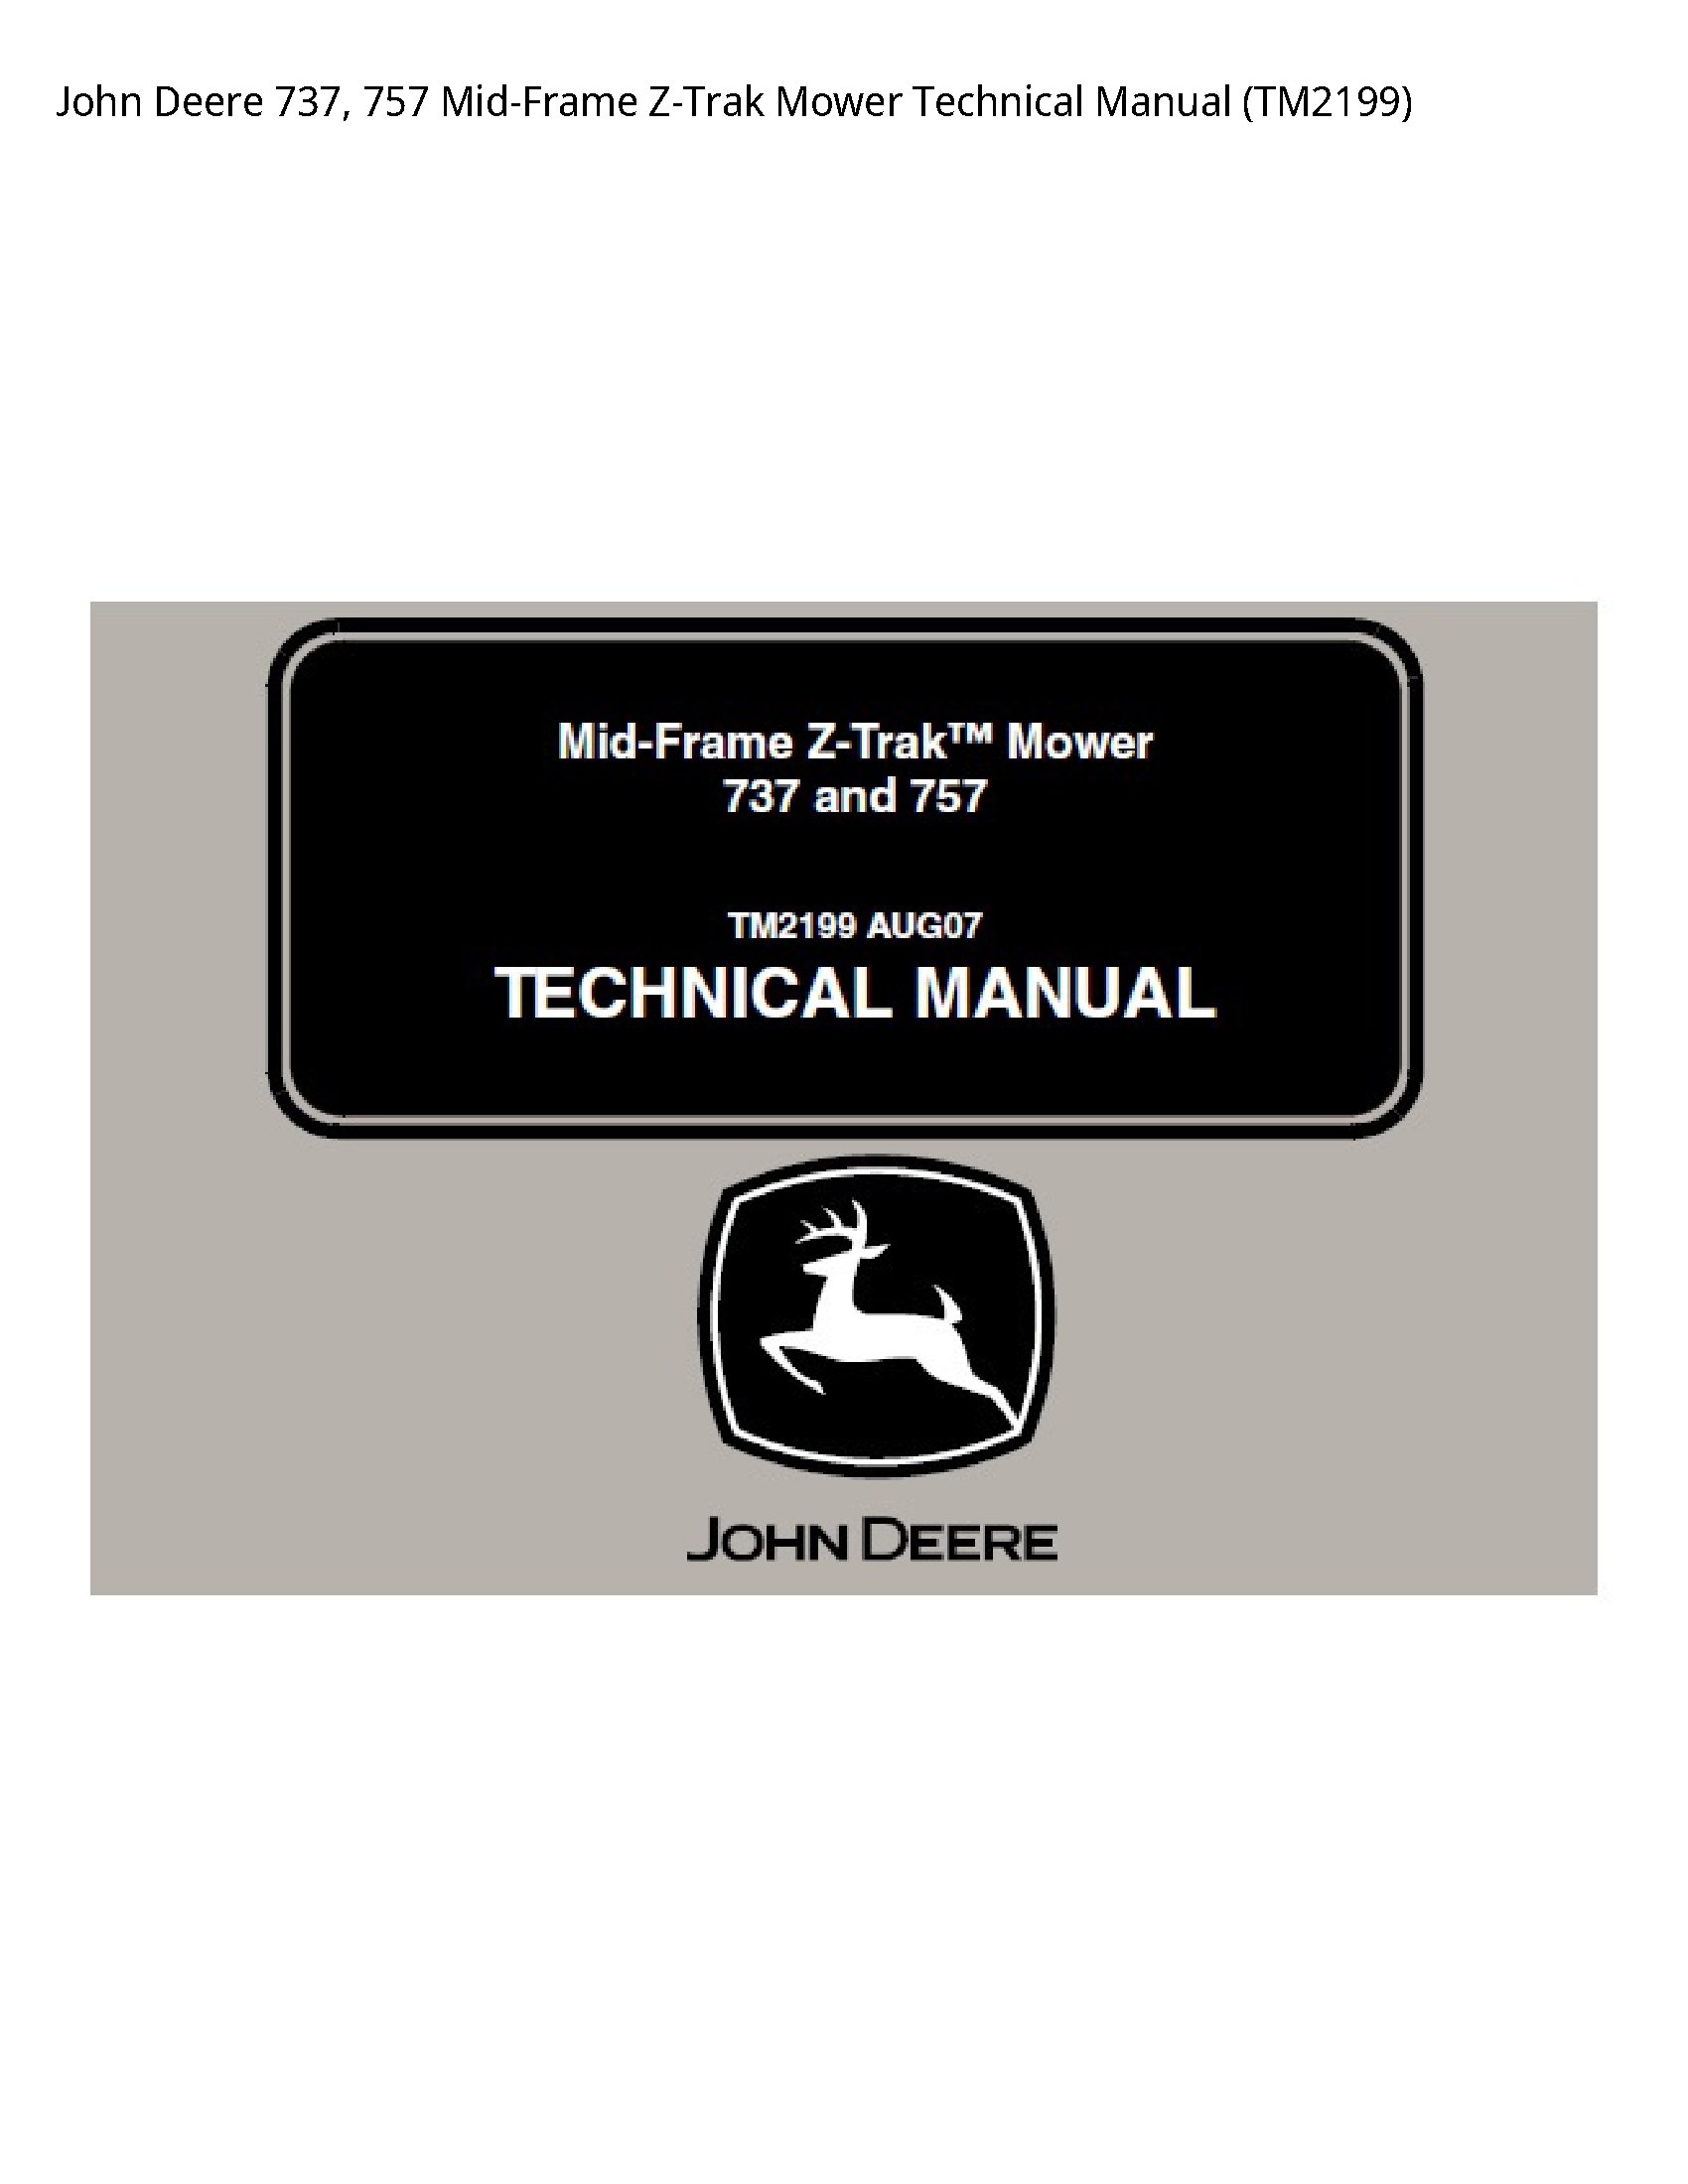 John Deere 737 Mid-Frame Z-Trak Mower Technical manual